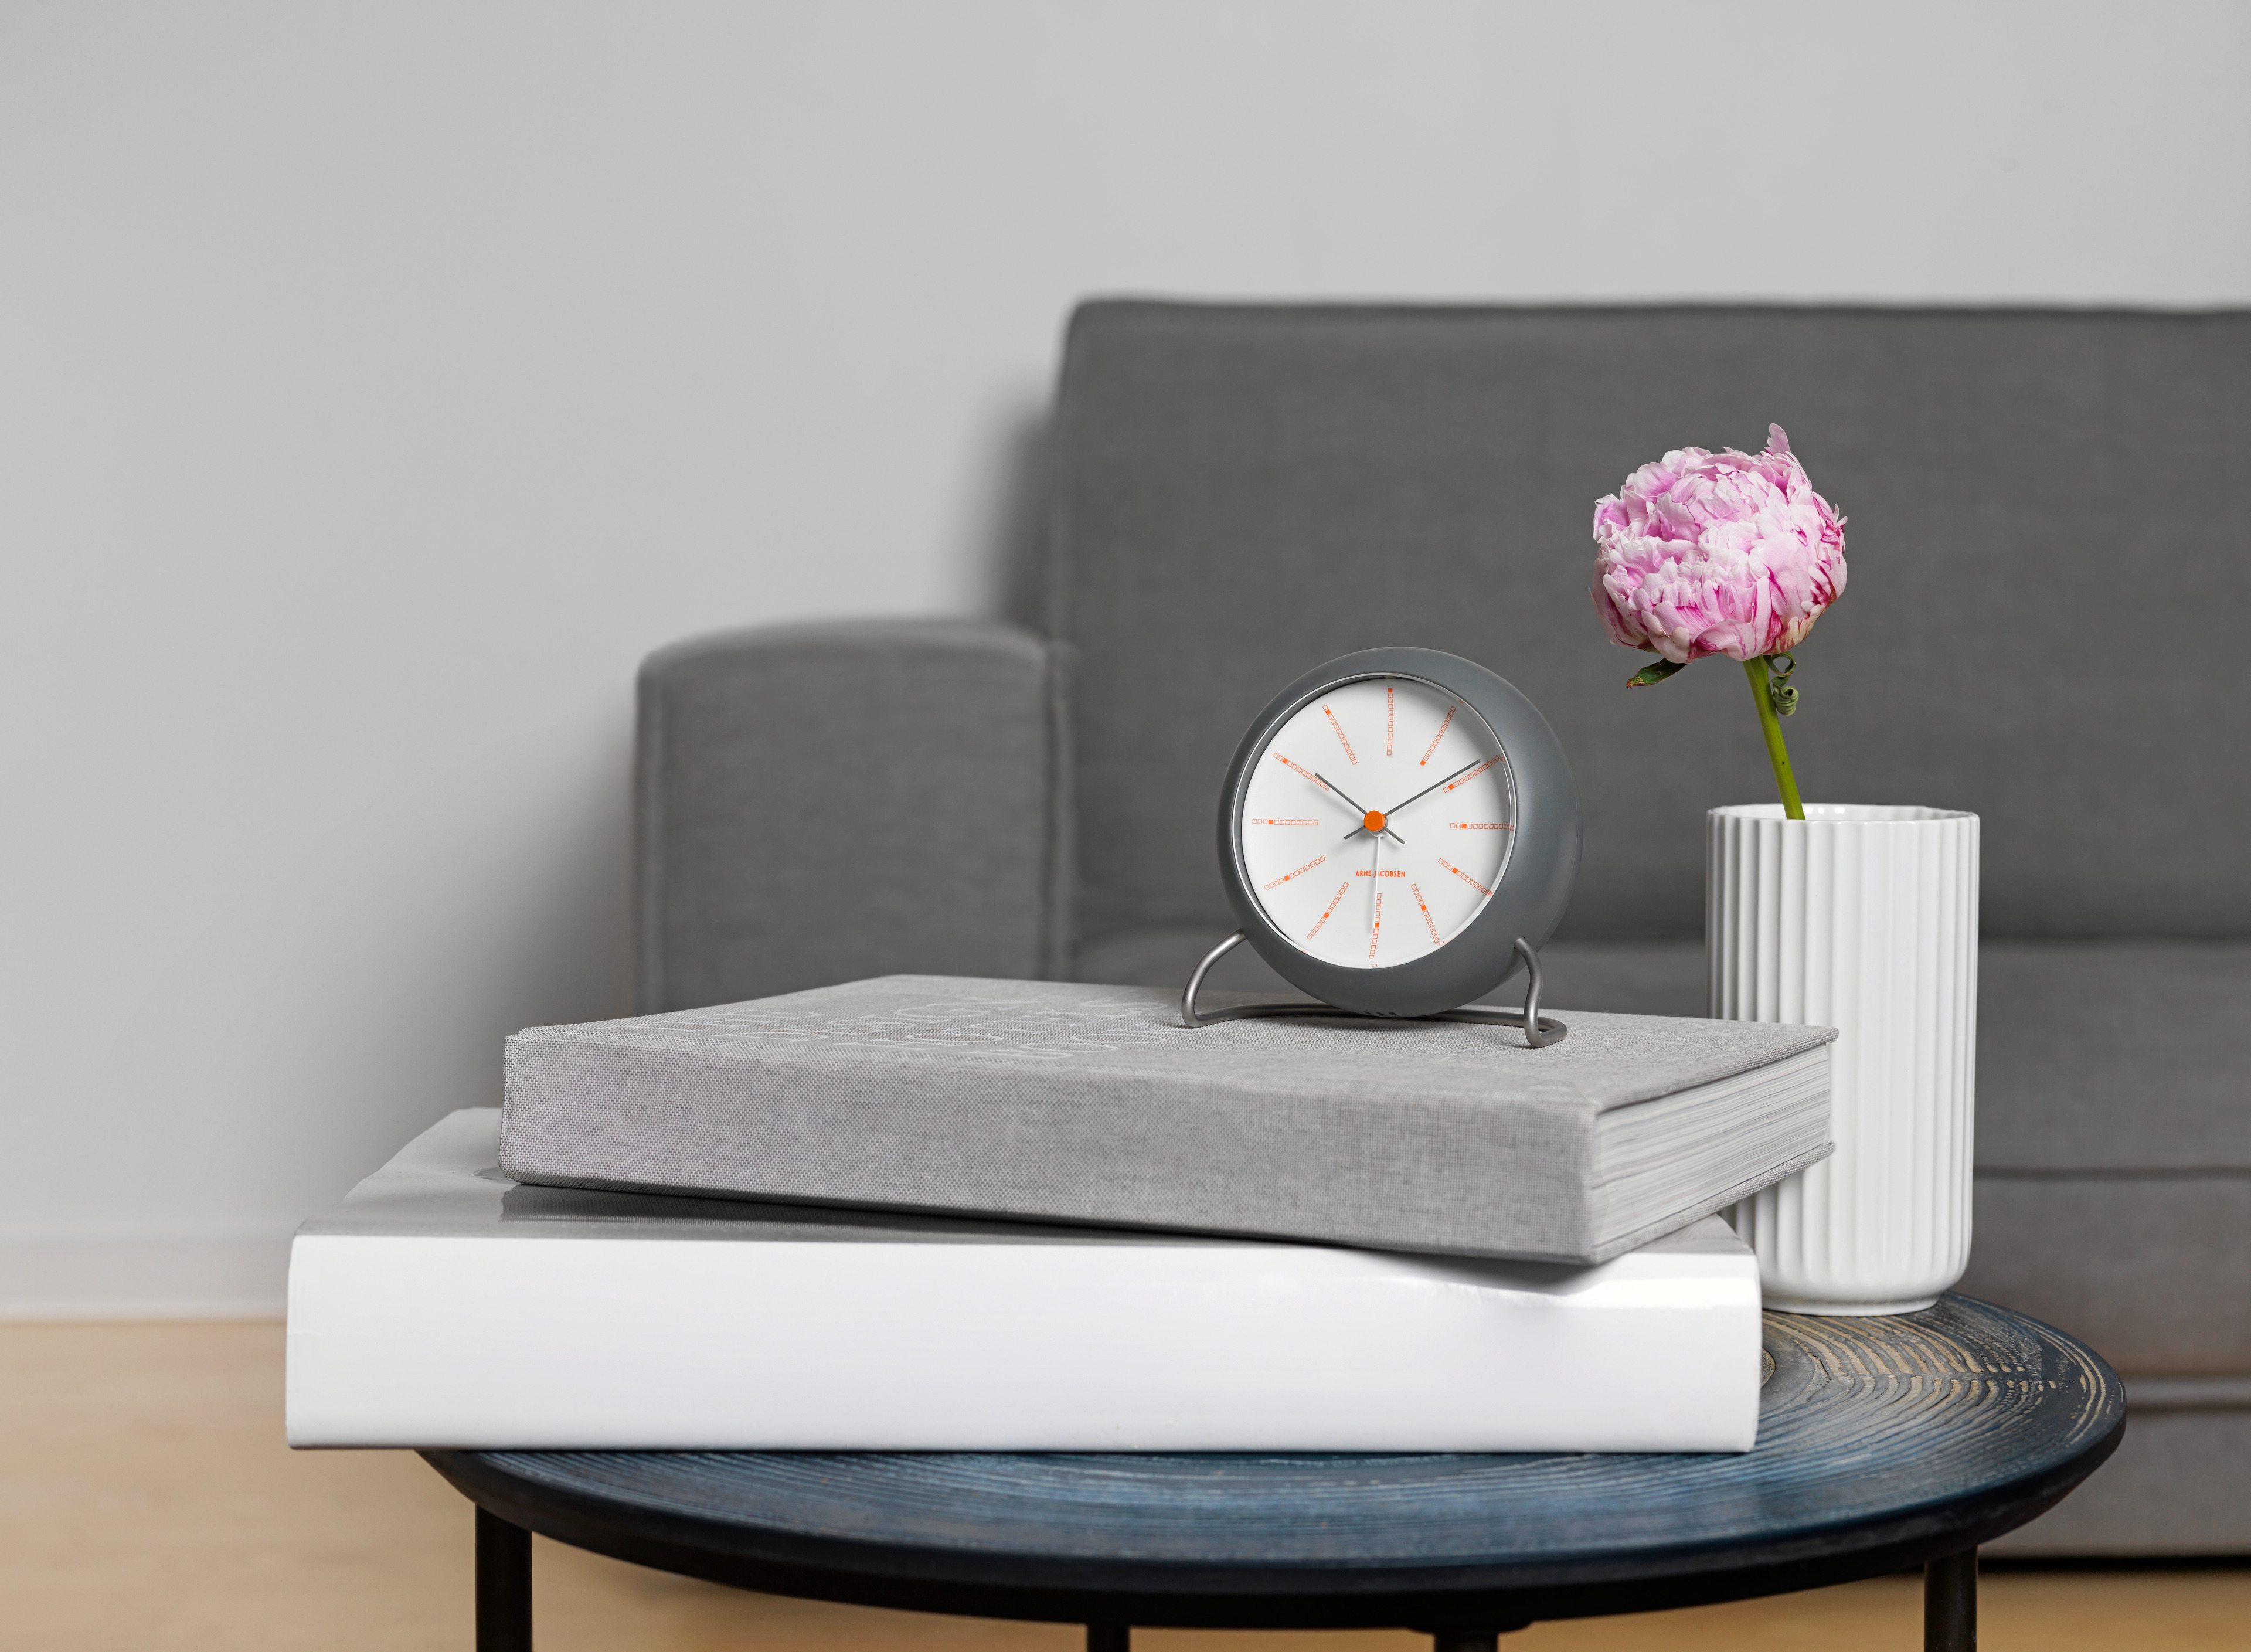 Väckarklocka från Arne Jacobsen Clocks på soffbord